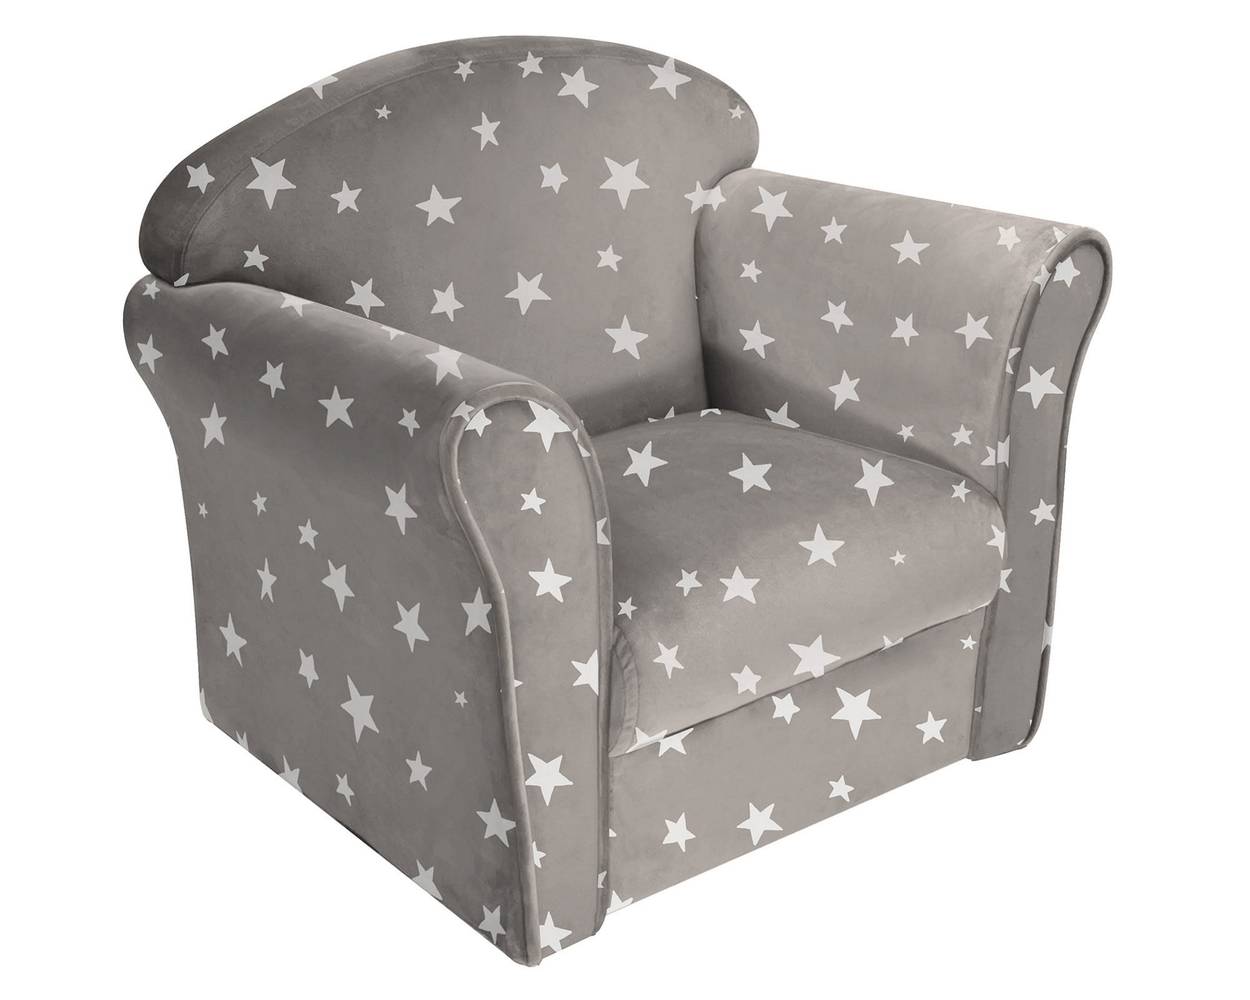 M+design sillón infantil estrellas gris (50 x 40 x 44 cm)